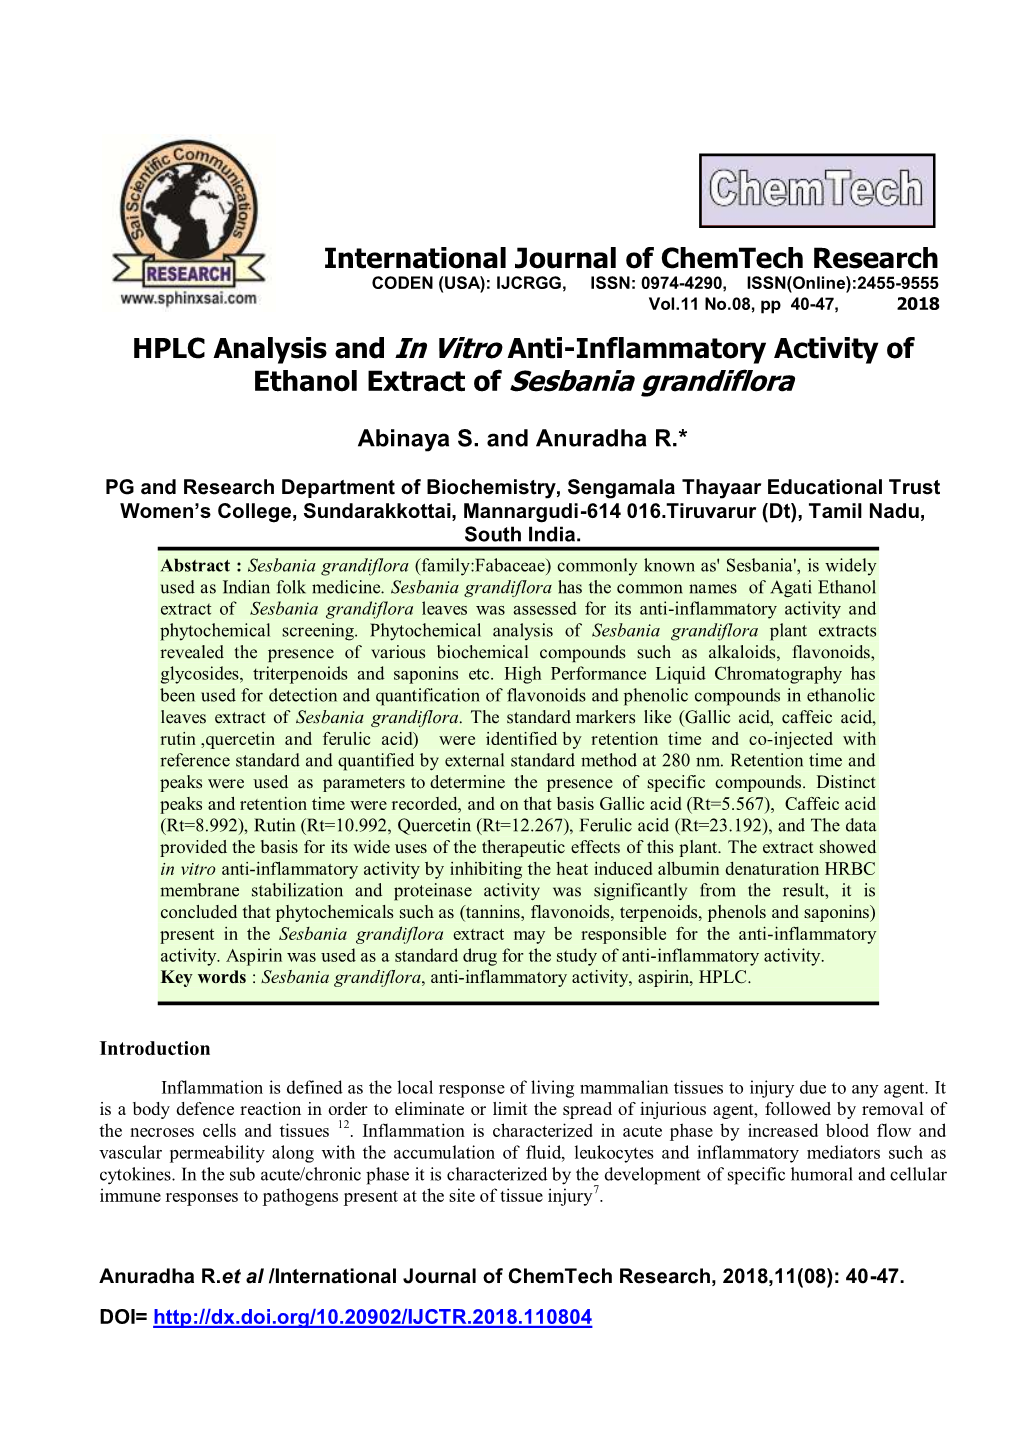 HPLC Analysis and in Vitro Anti-Inflammatory Activity of Ethanol Extract of Sesbania Grandiflora